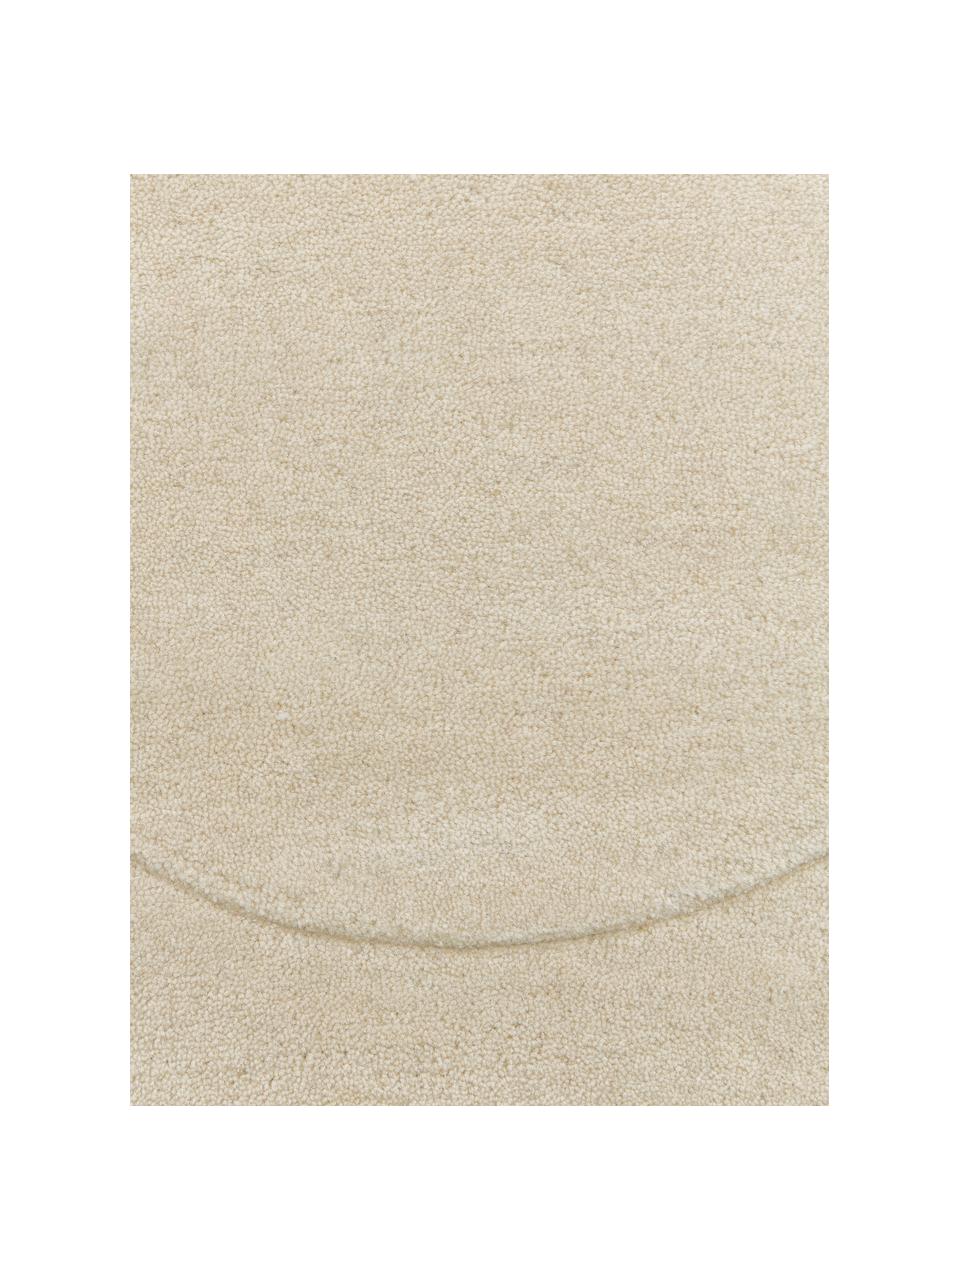 Tapis en laine forme organique, tufté main Kadey, Beige clair, larg. 120 x long. 180 cm (taille S)